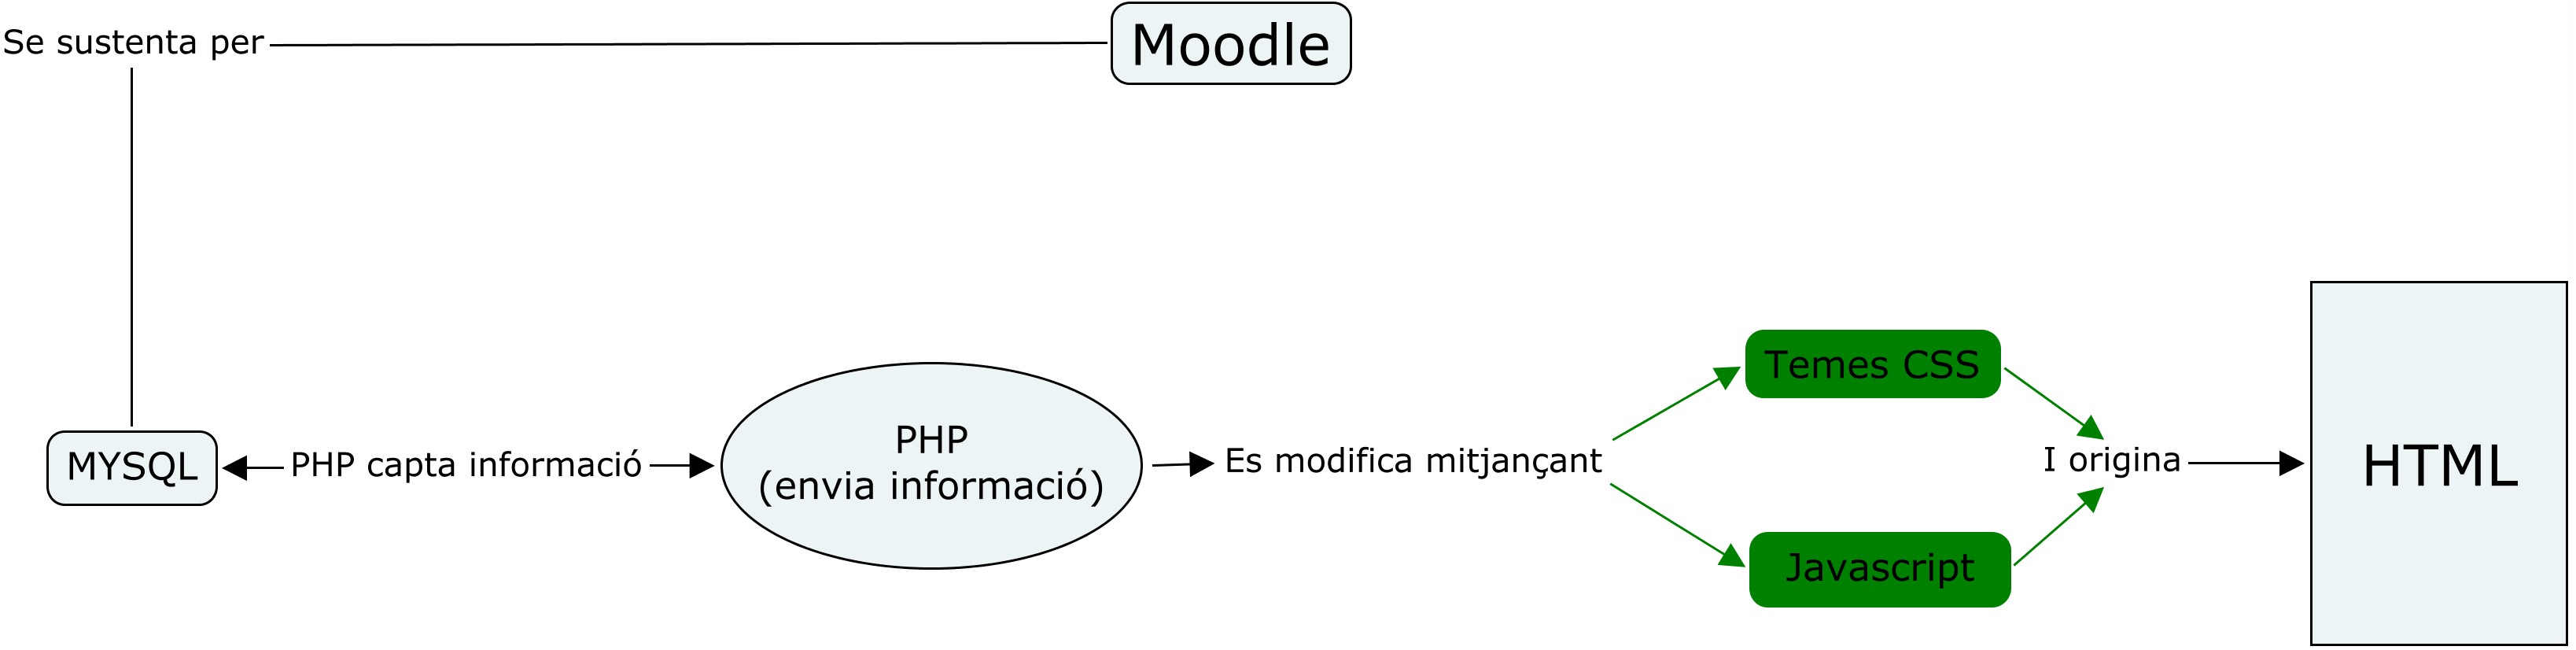 Modificació del Moodle usada per a la implementació